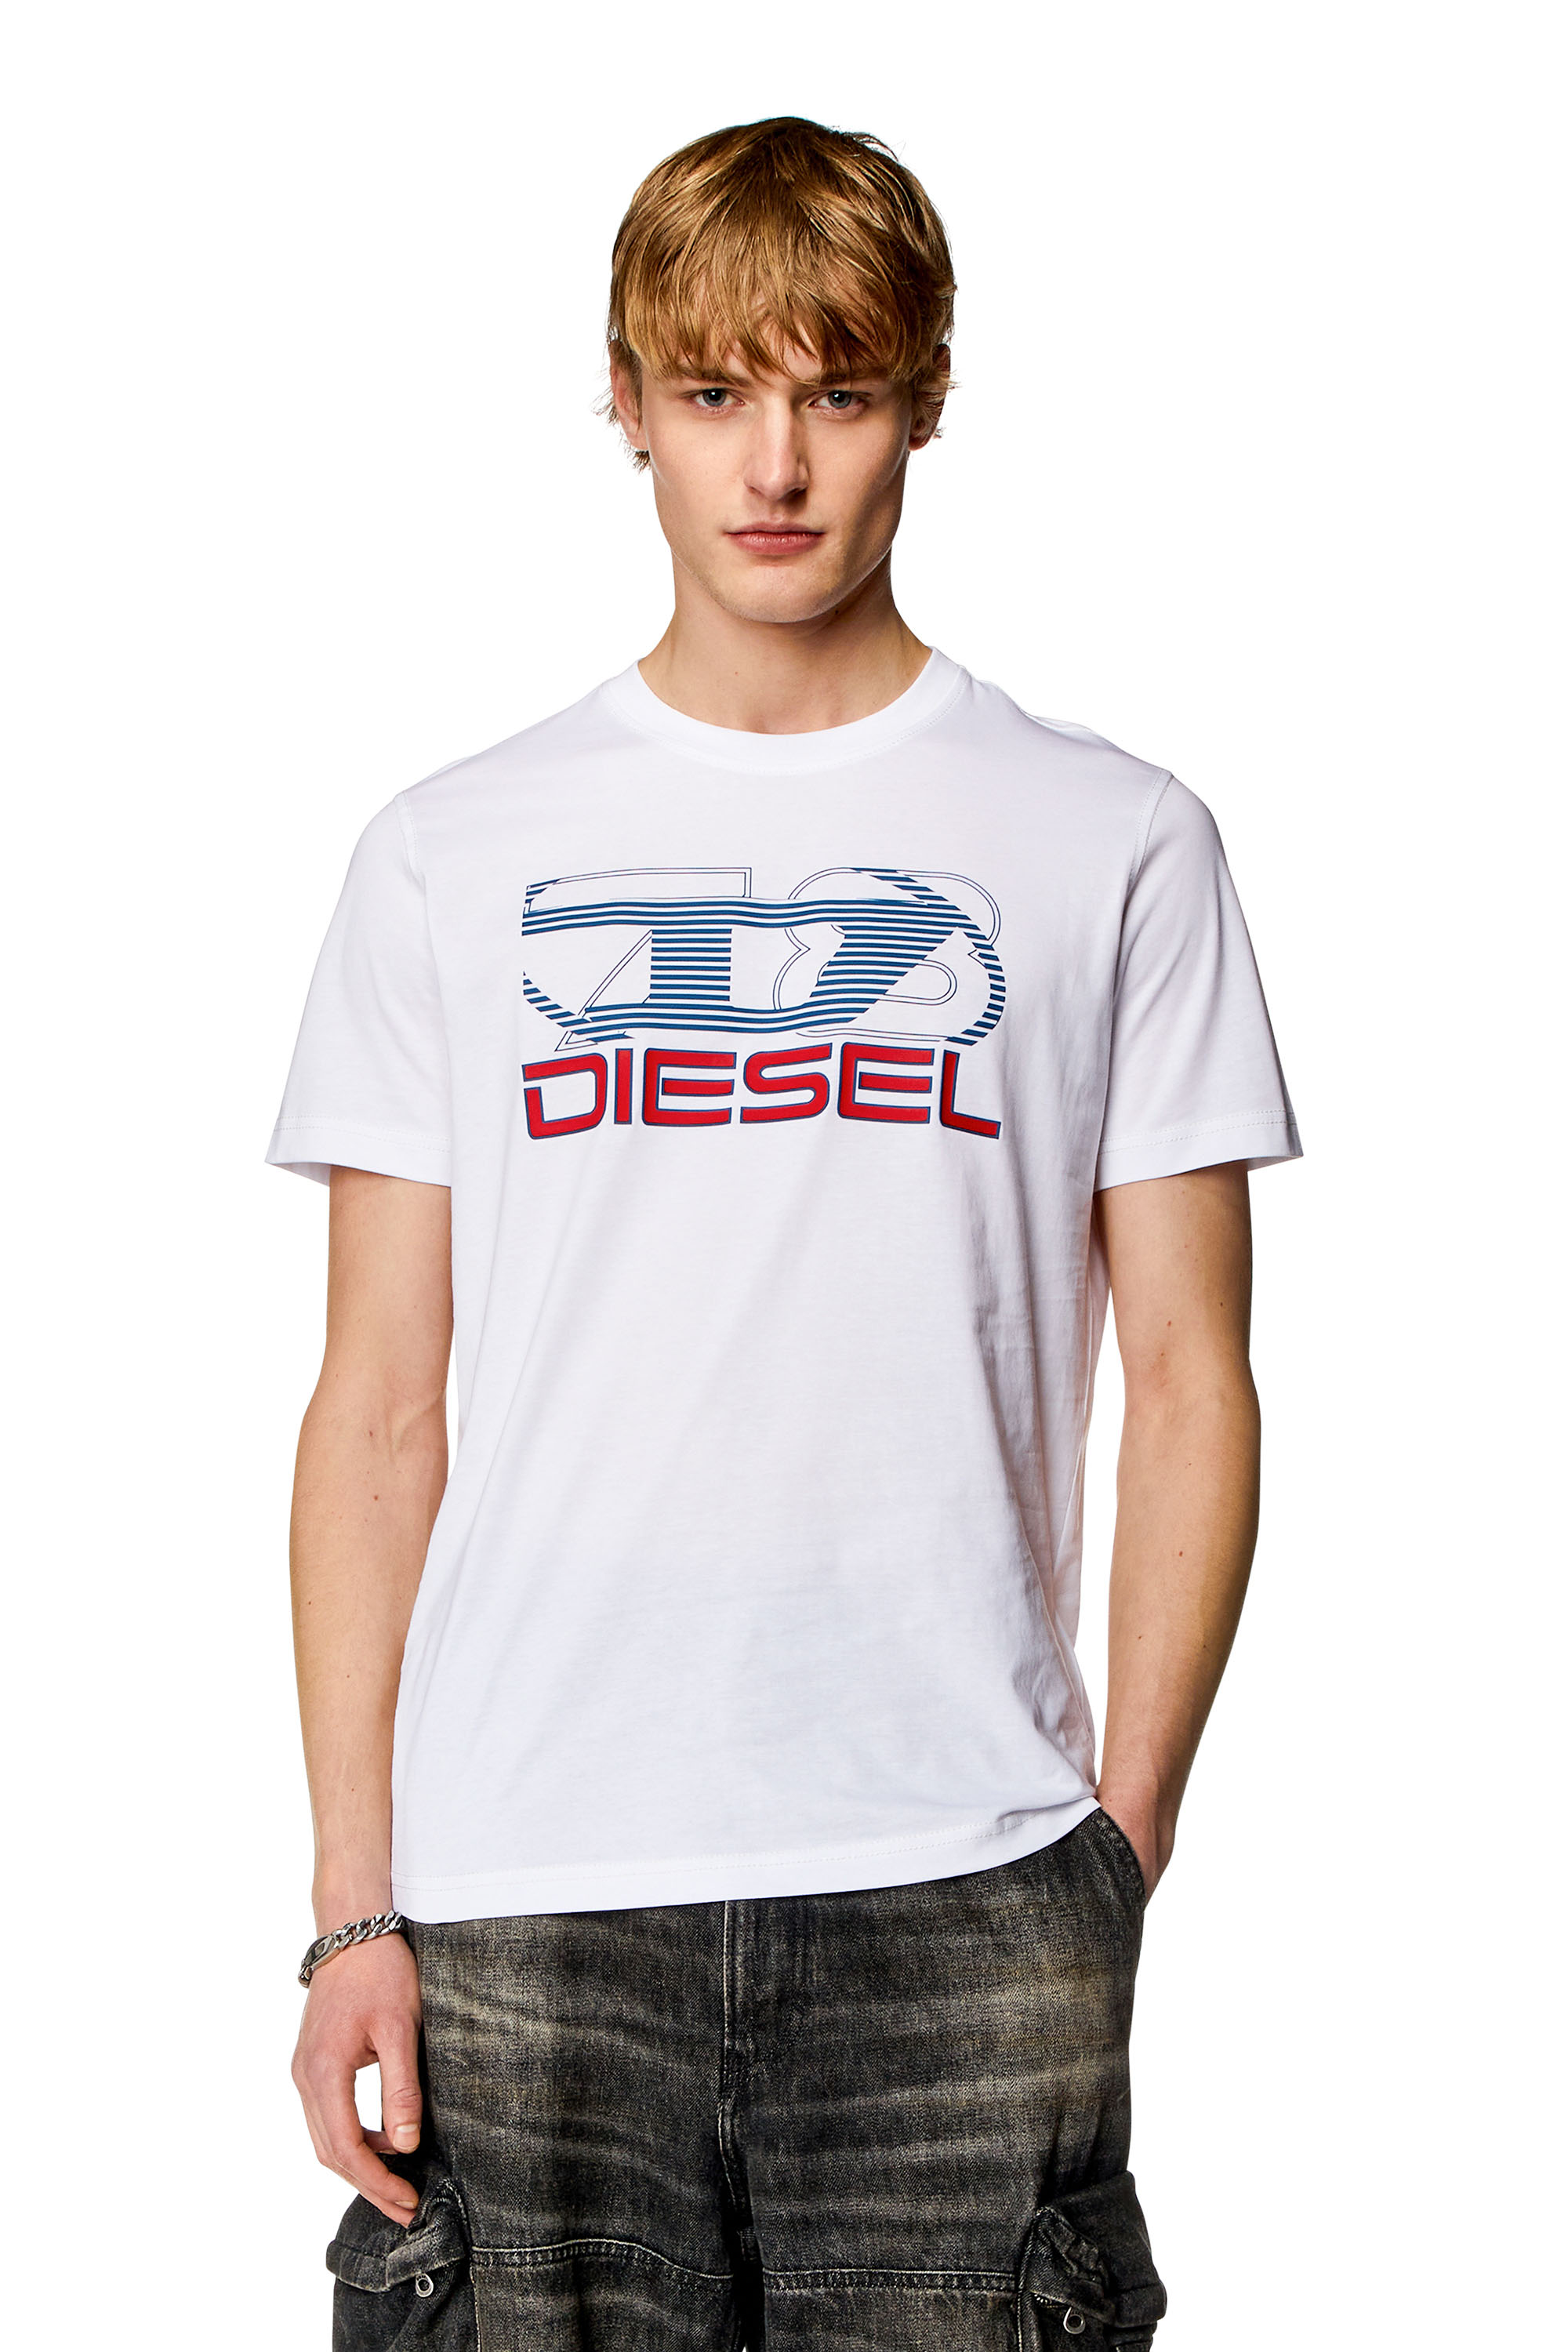 Diesel - T-DIEGOR-K74, Blanc - Image 1